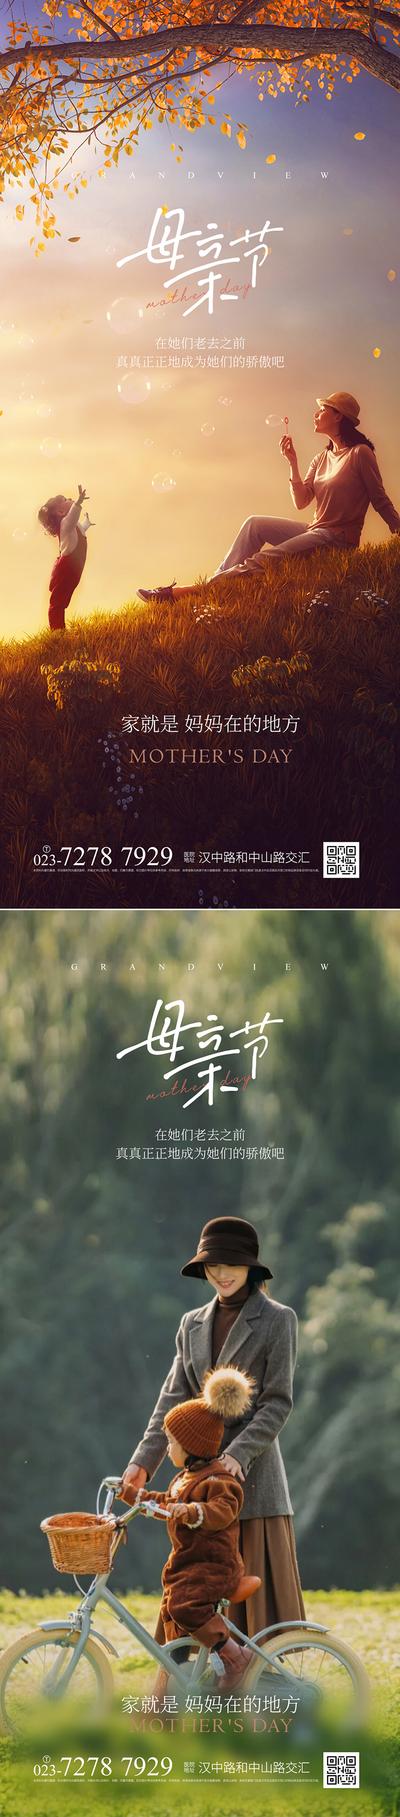 南门网 广告 海报 公历节日 母亲节 快乐 草地 母子 系列 温馨